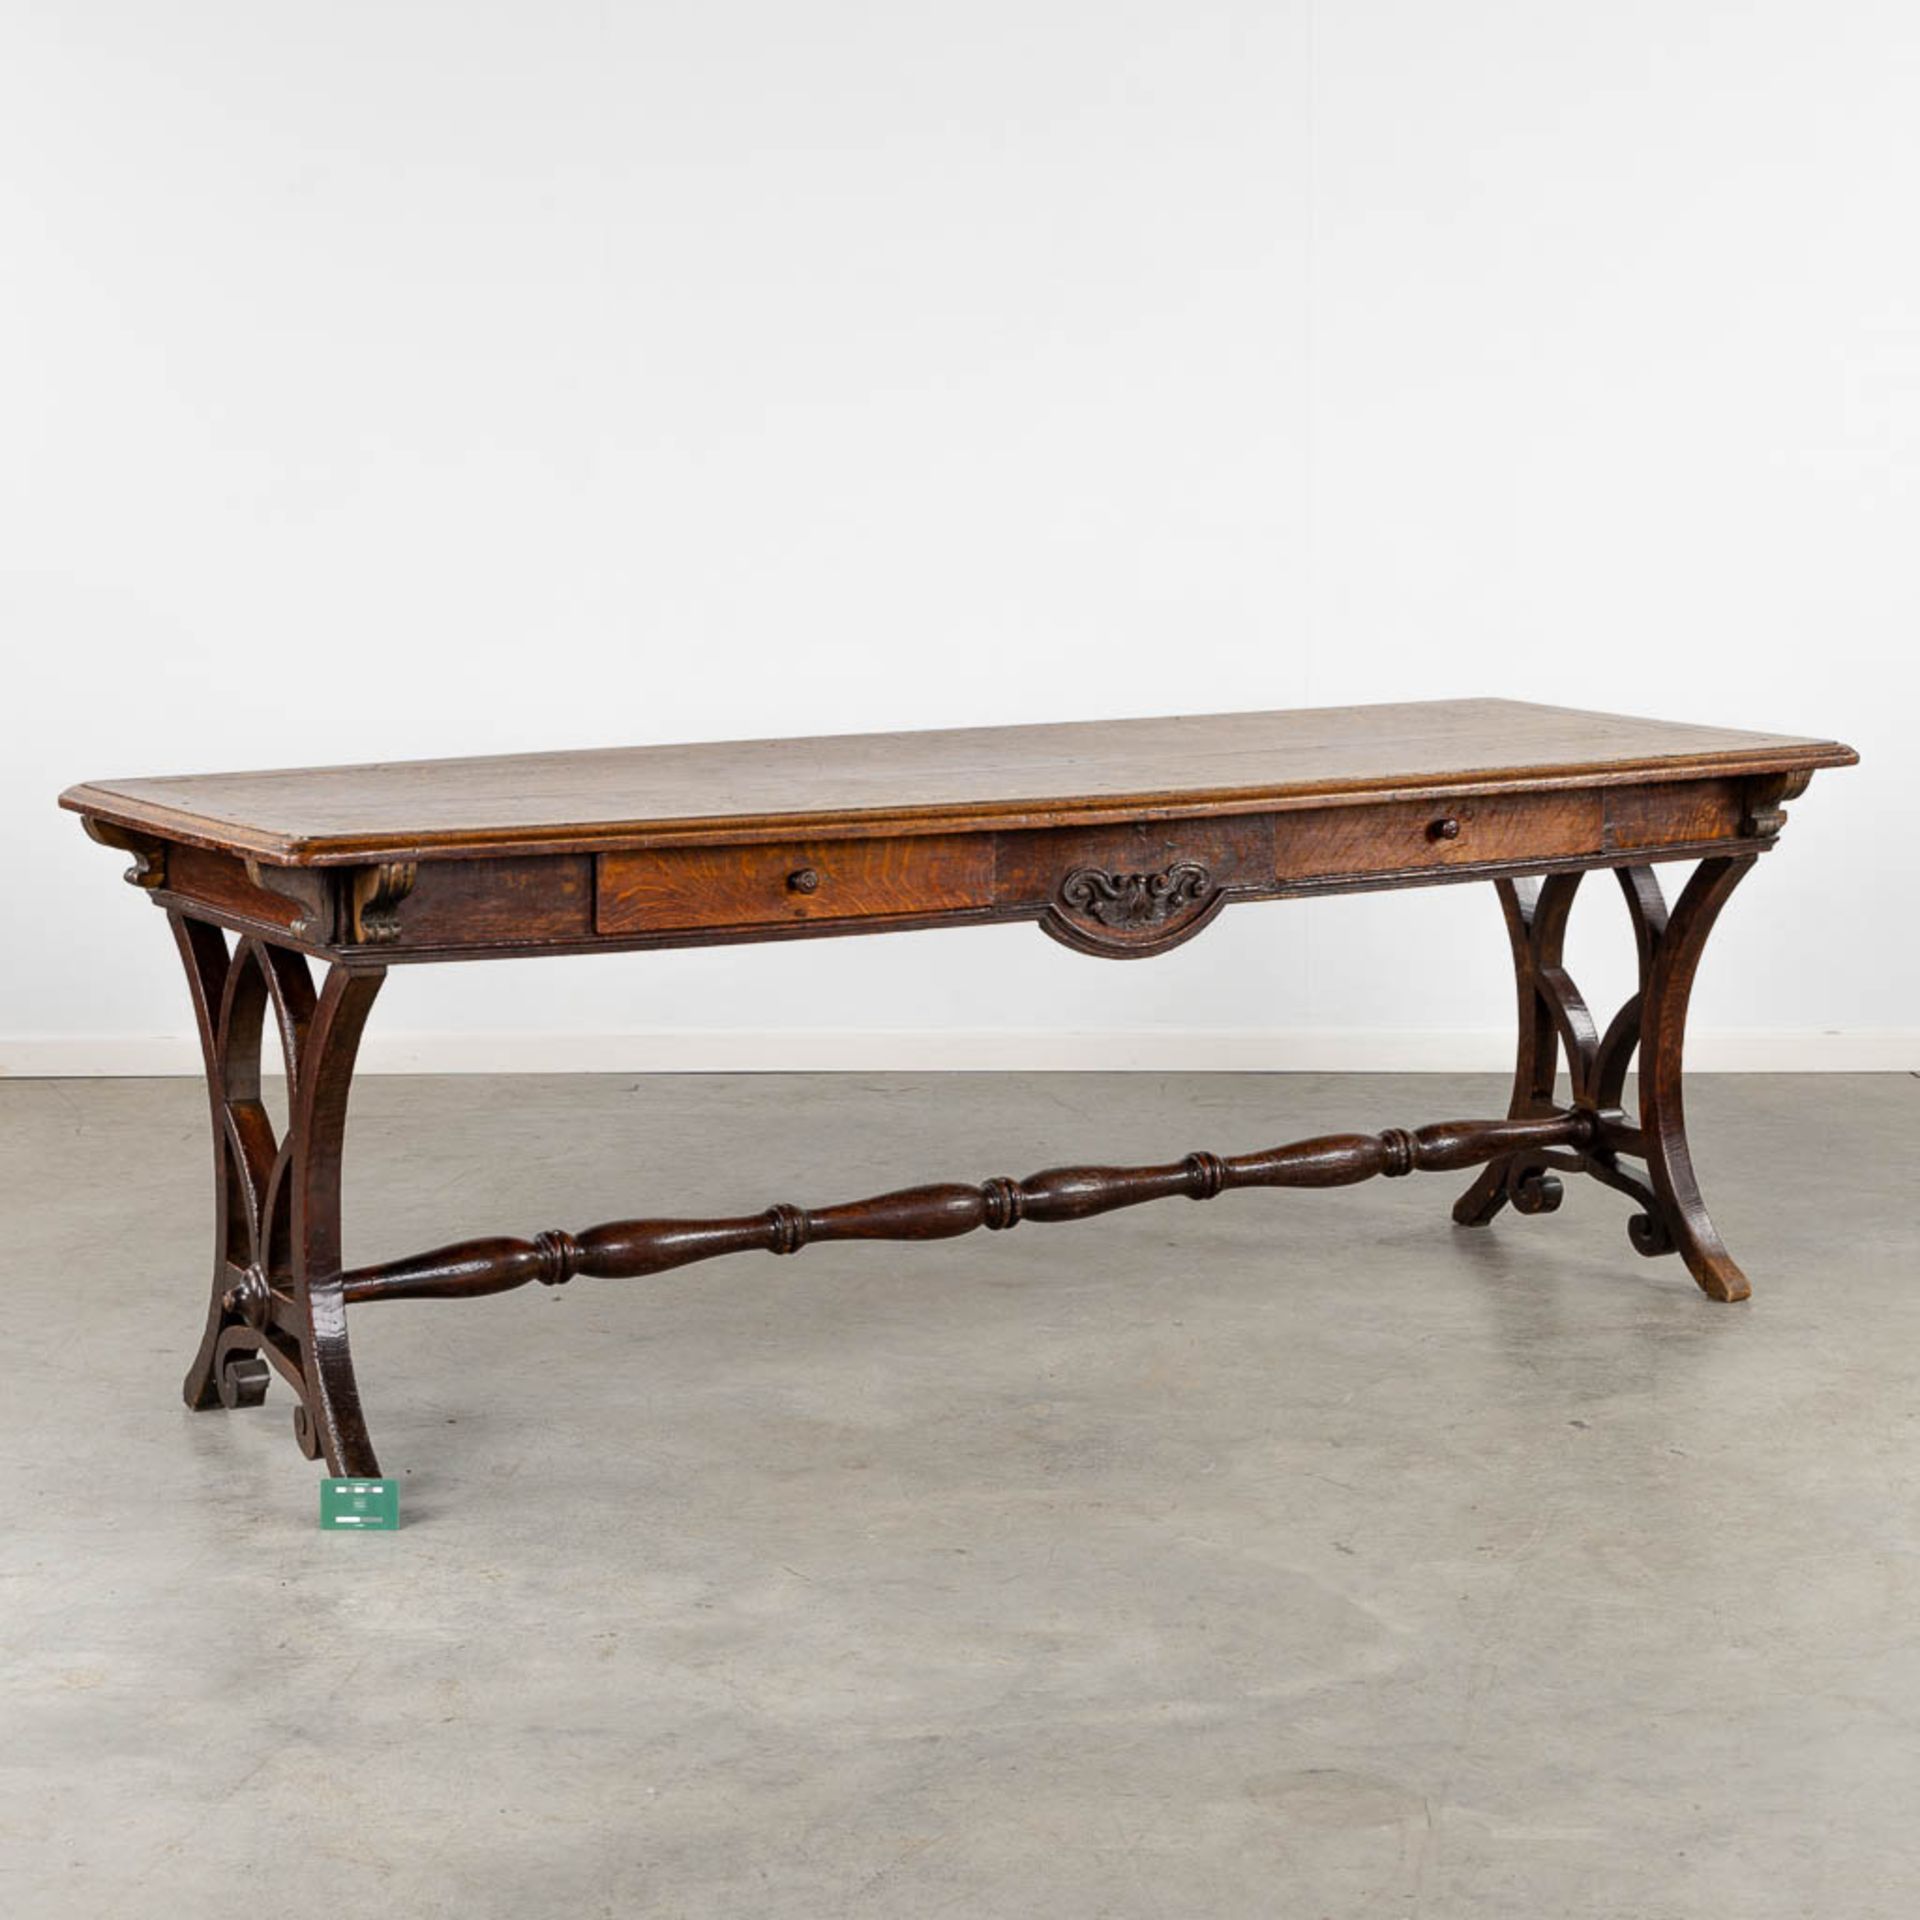 An antique desk/table with sculptures and a drawer, oak. 19th C. (L:77 x W:217 x H:76 cm) - Bild 2 aus 13